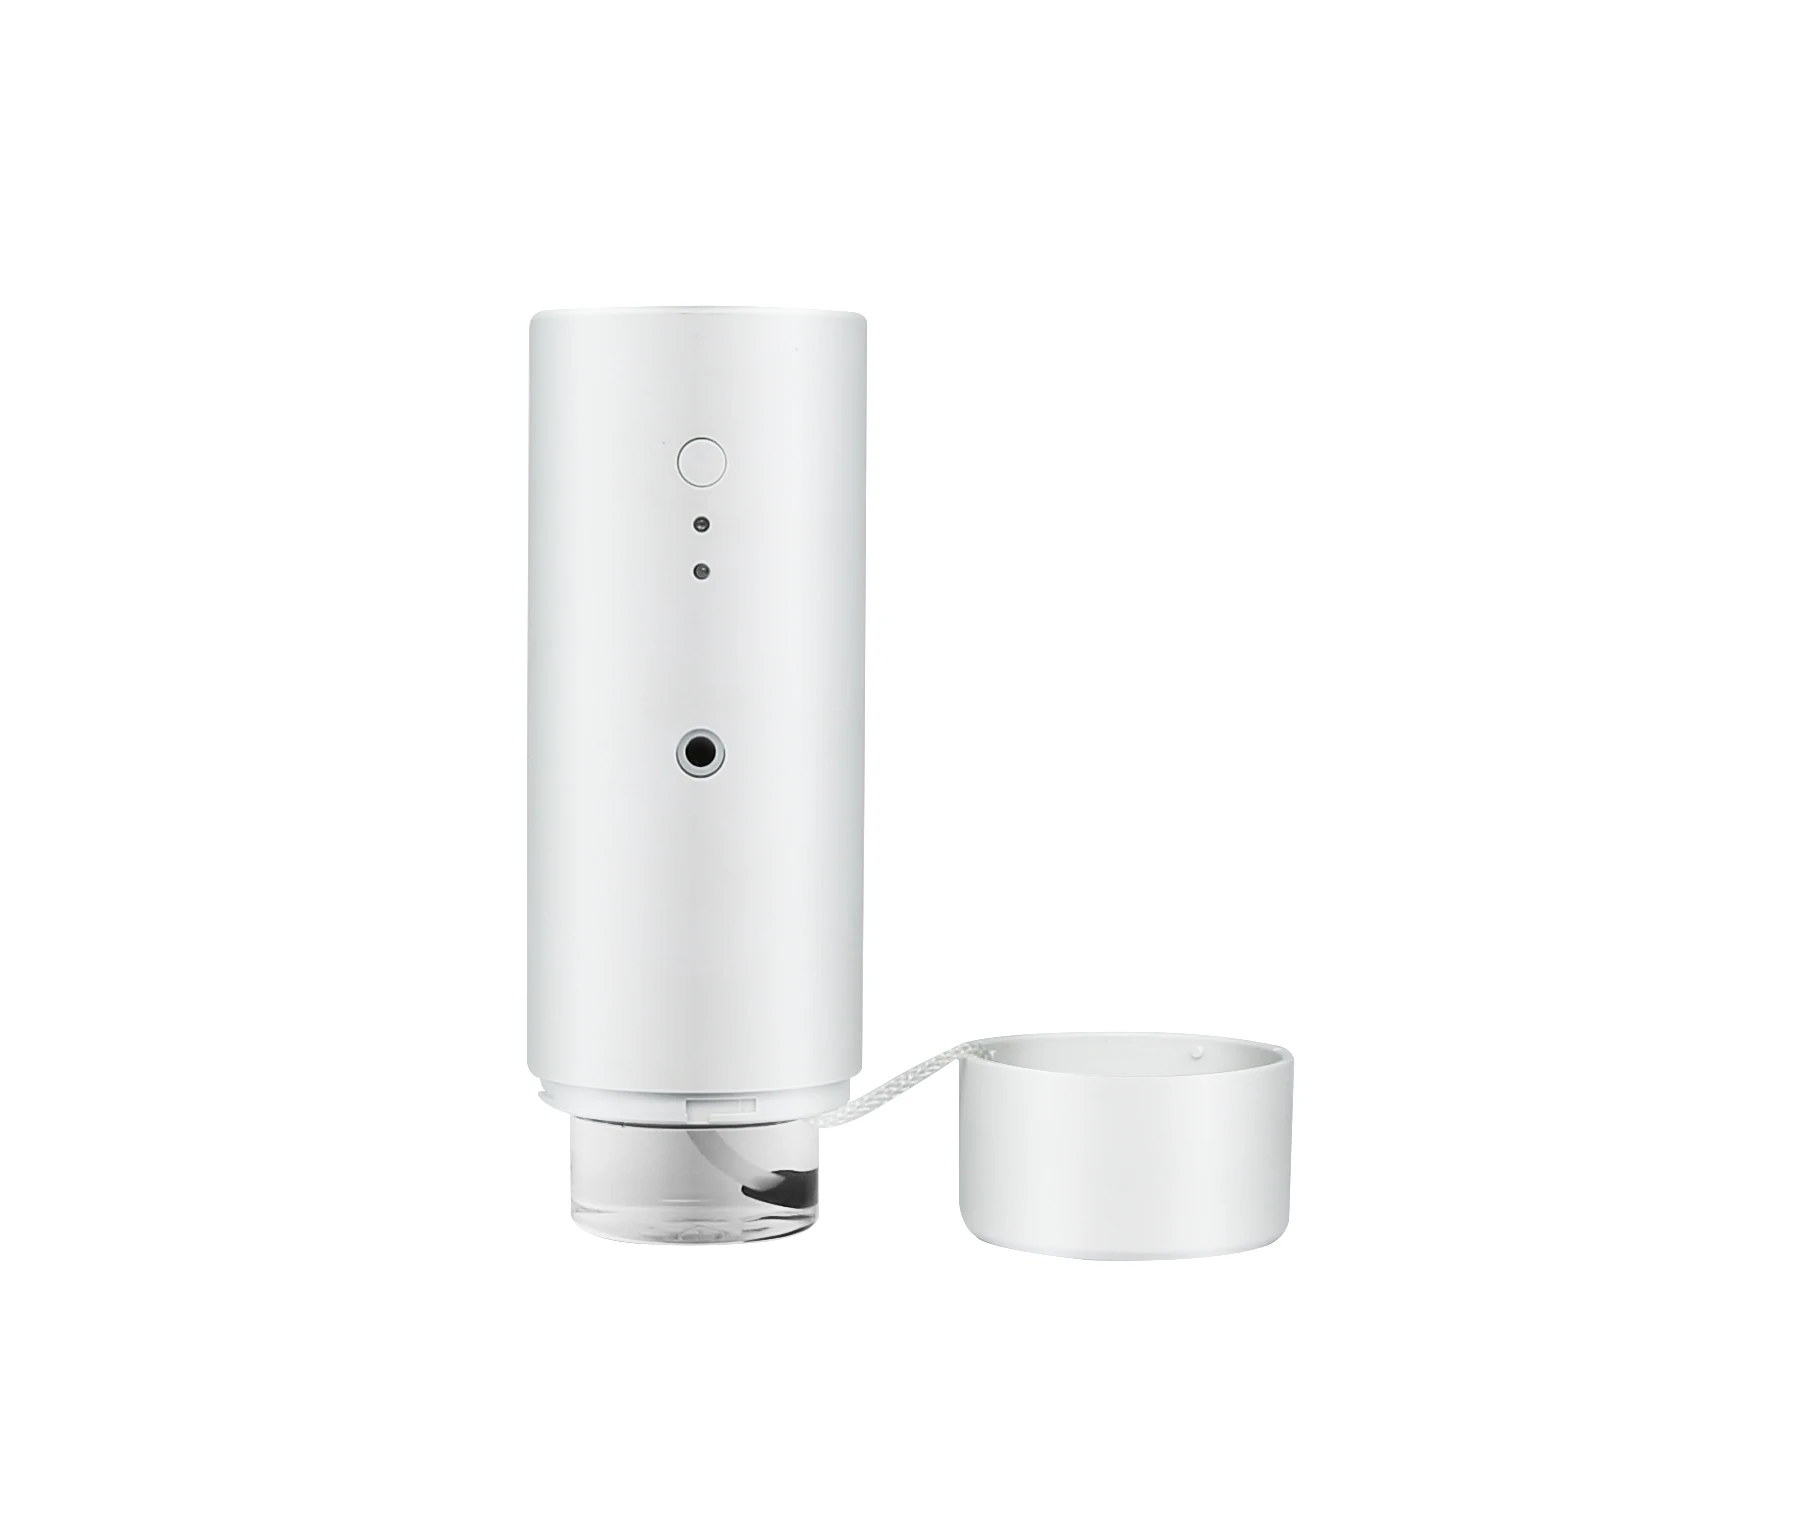 Unique products Bluetooth diffuser 200m3 smart scent diffuser machine